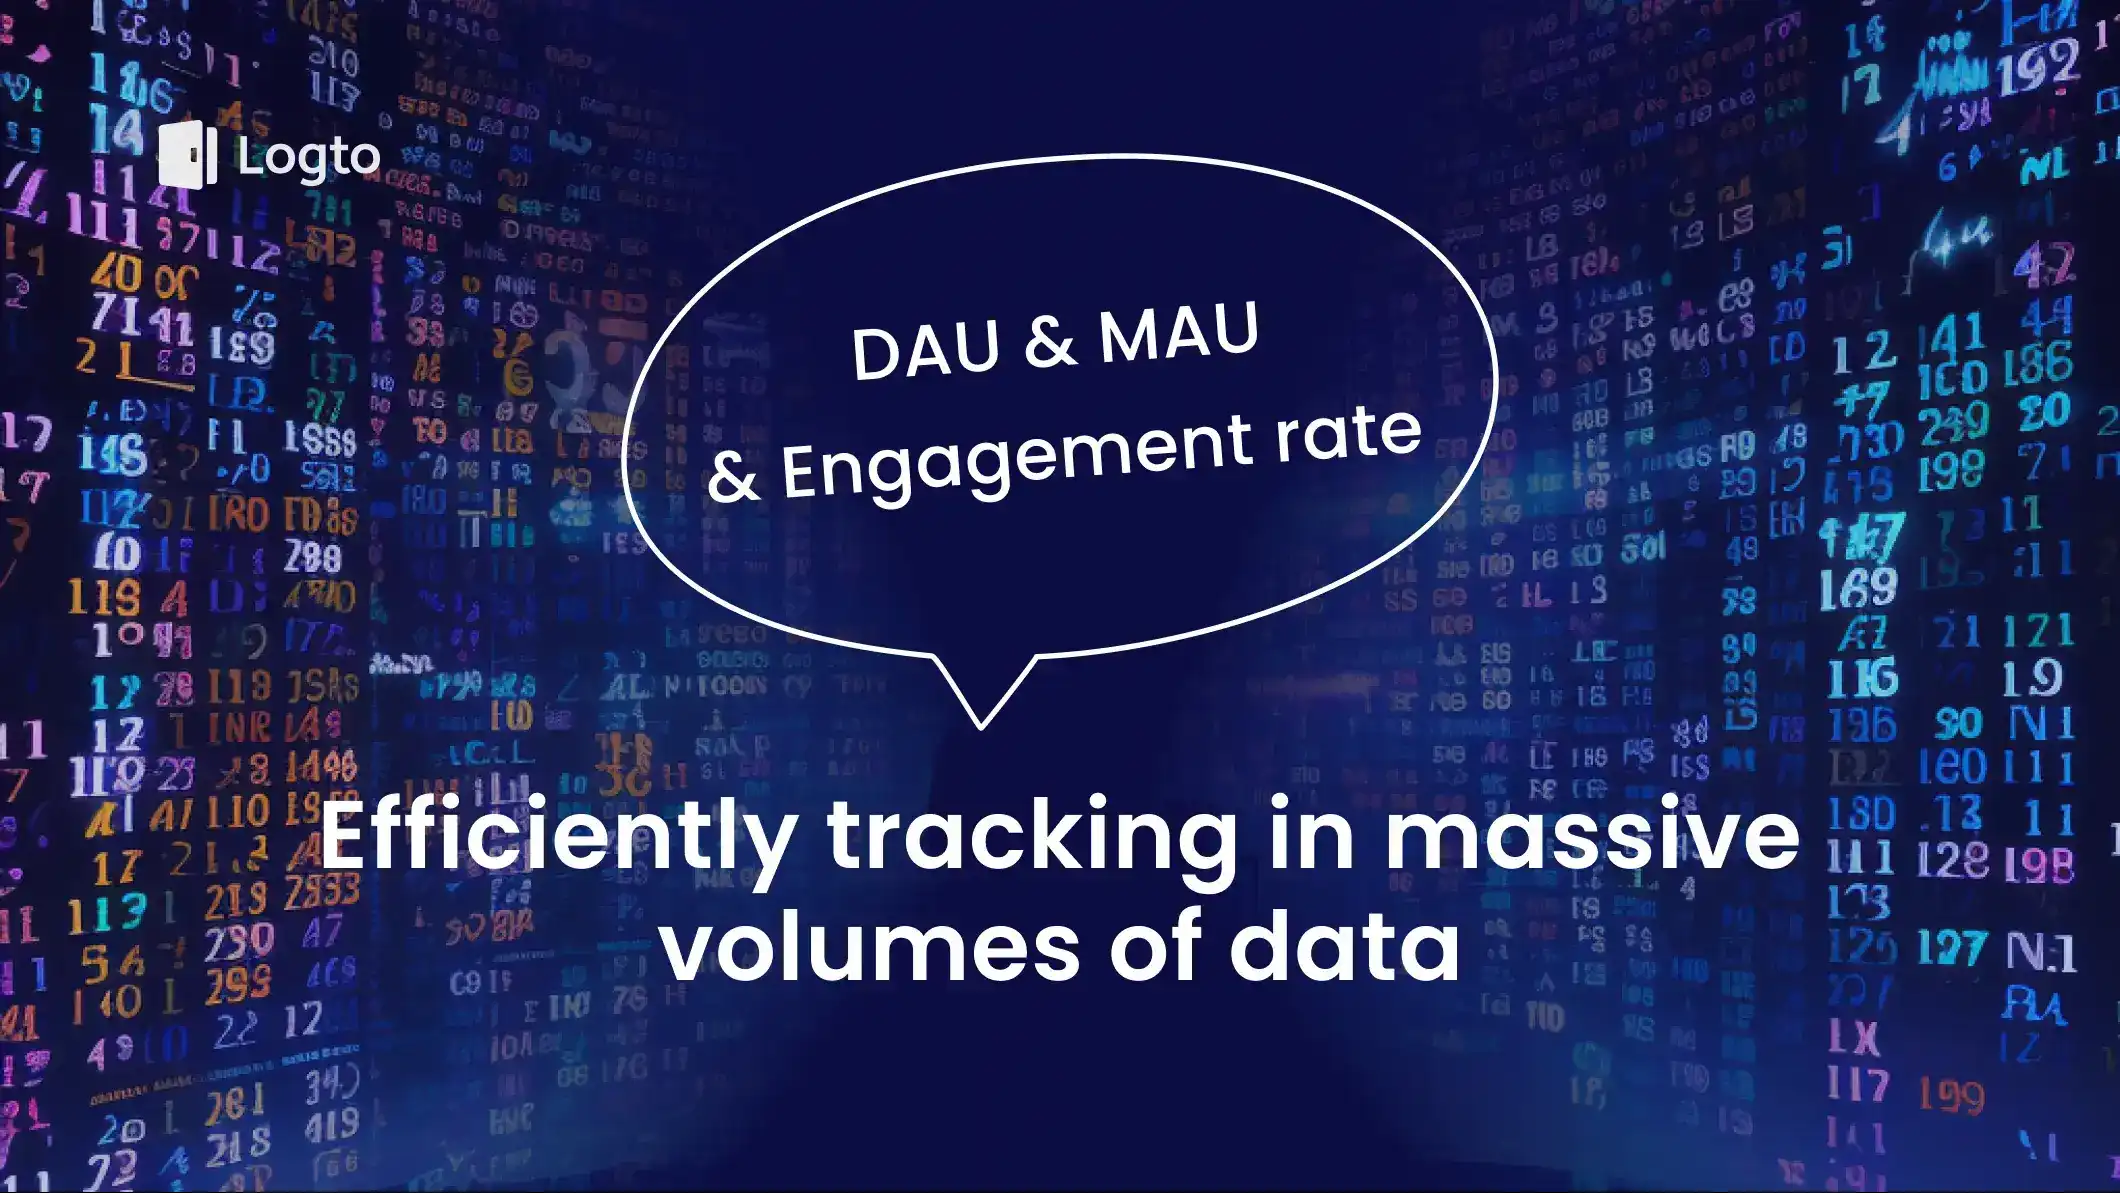 Efficiently tracking DAU and MAU in high-traffic sites